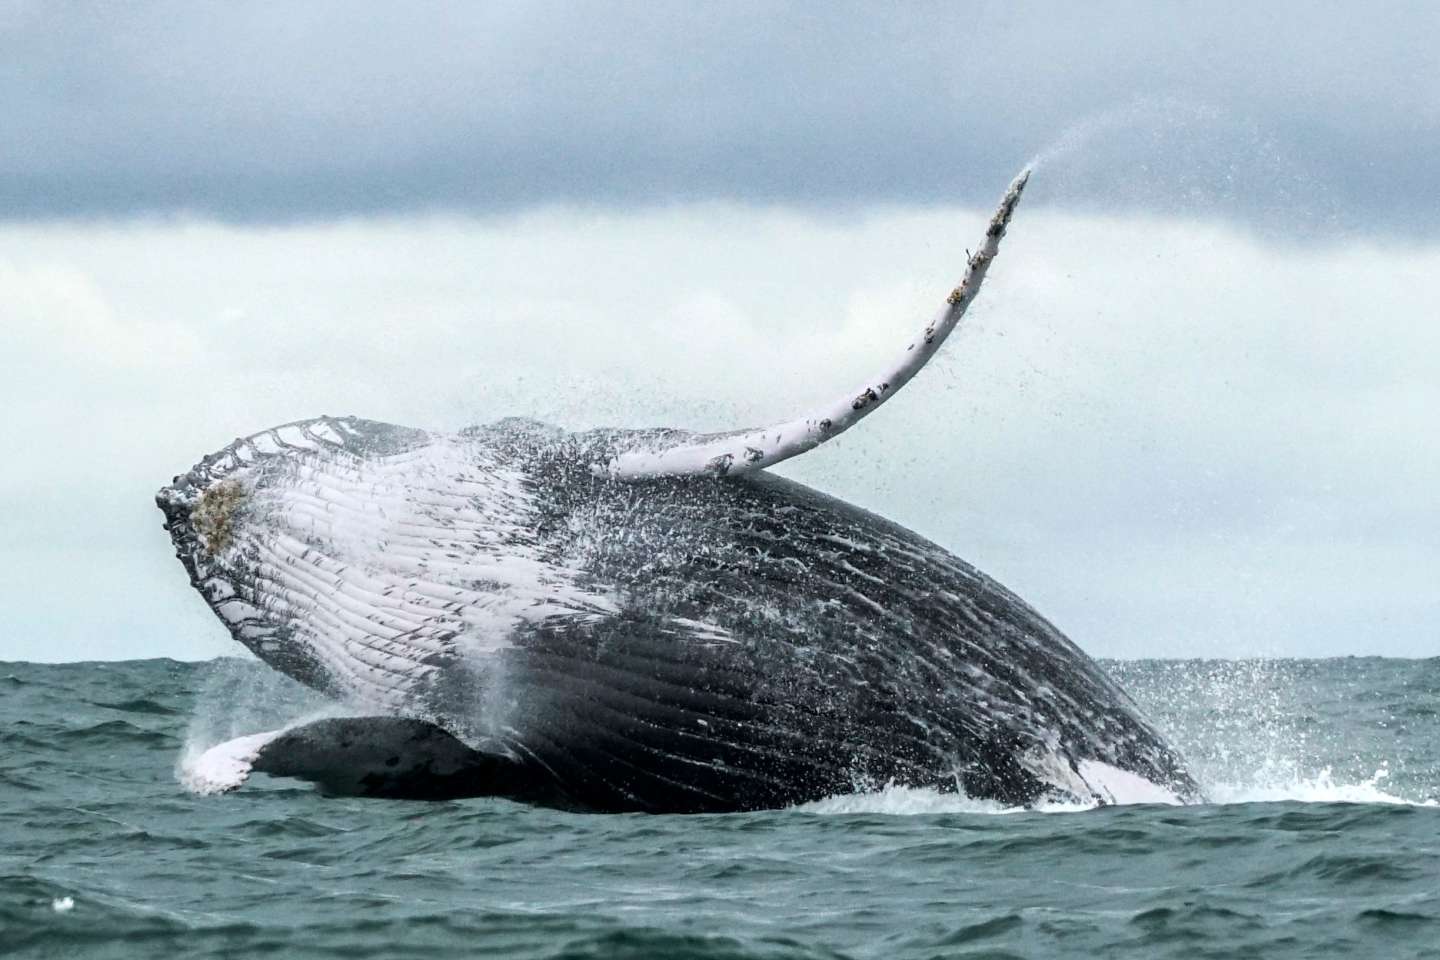 Fonds marins : les baleines et les dauphins sous la menace de l’exploitation minière